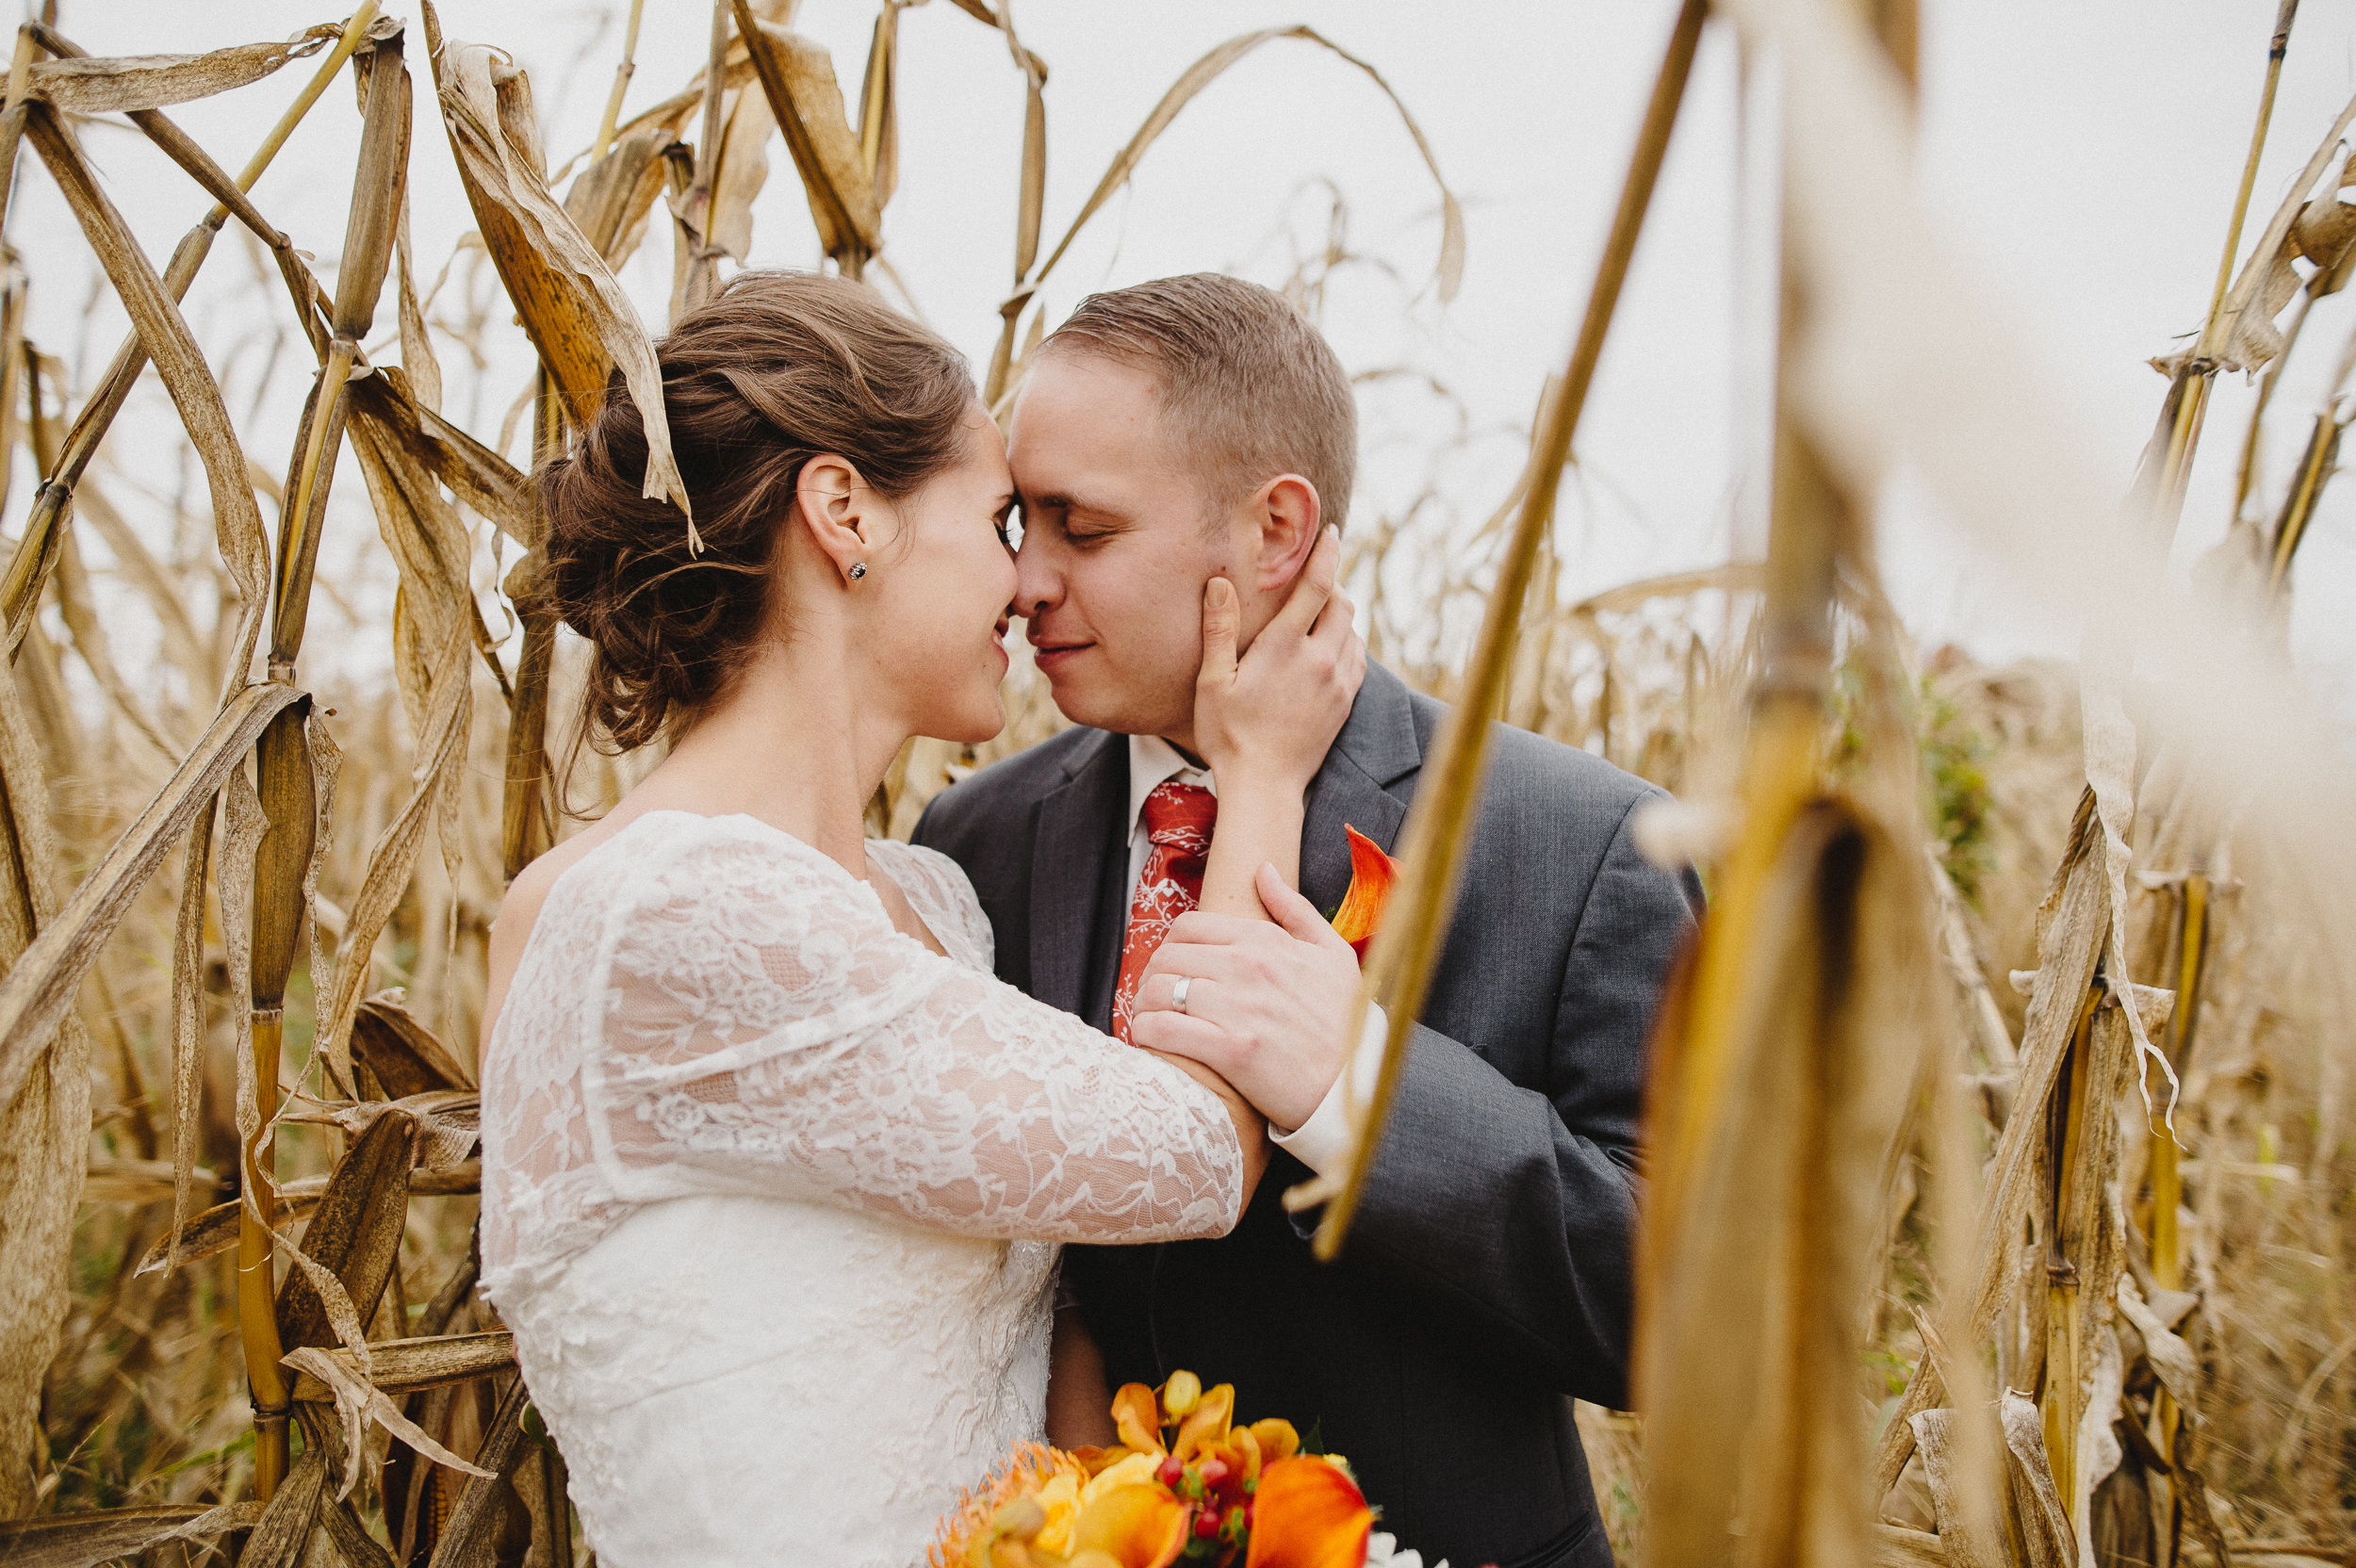 thousand-acre-farm-wedding-photographer-58.jpg